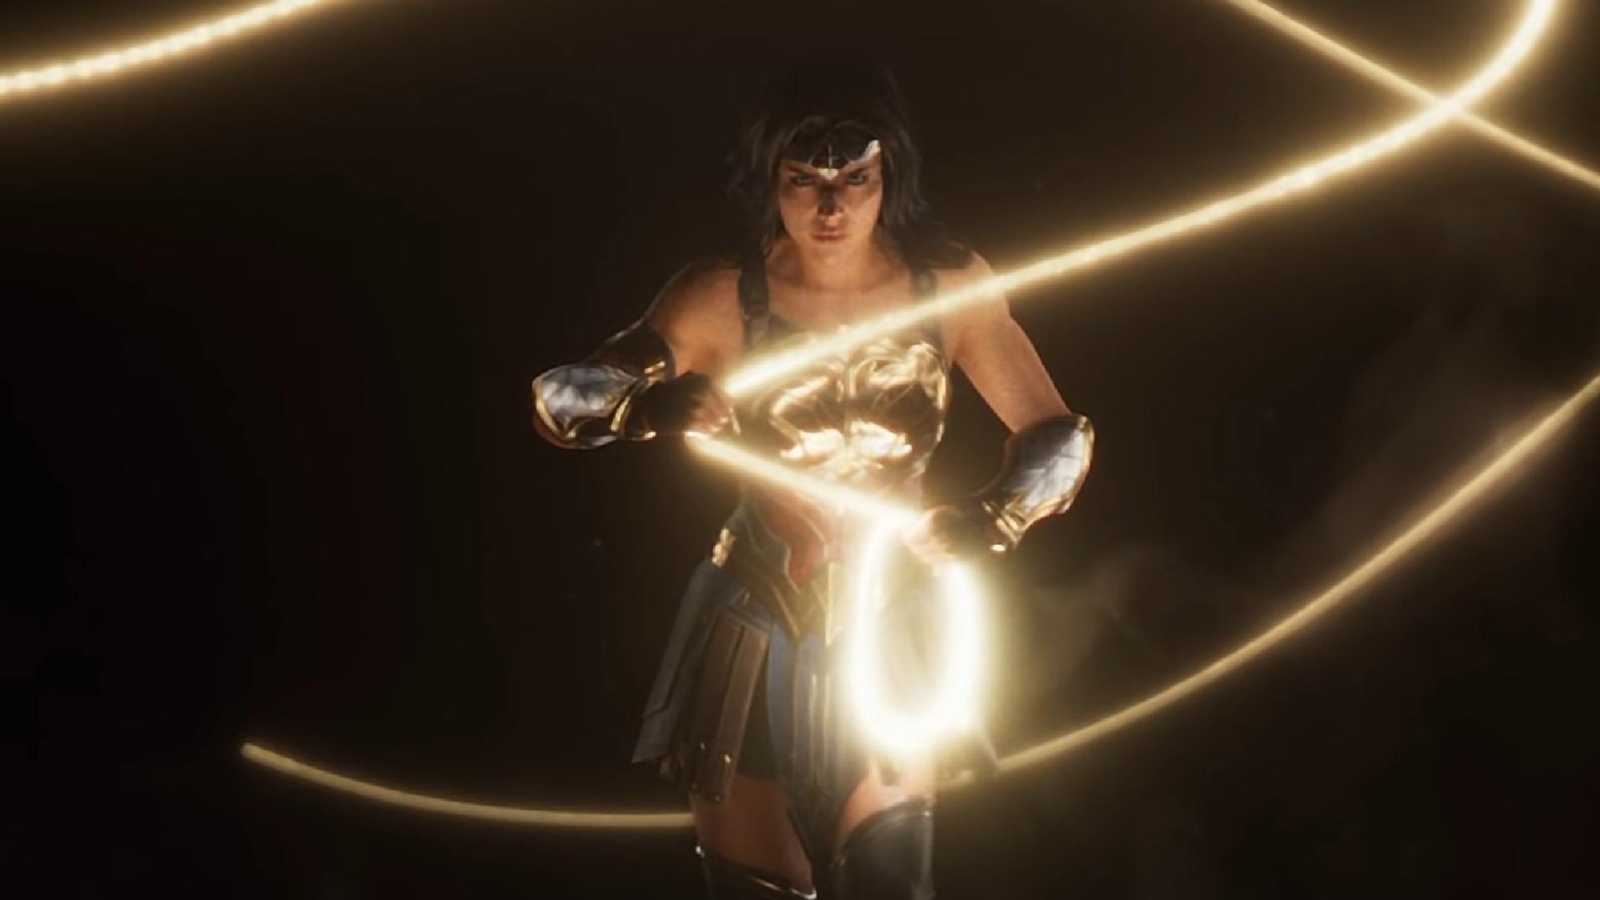 První detaily o Wonder Woman prozrazeny. Bude podobná sérii Middle-earth